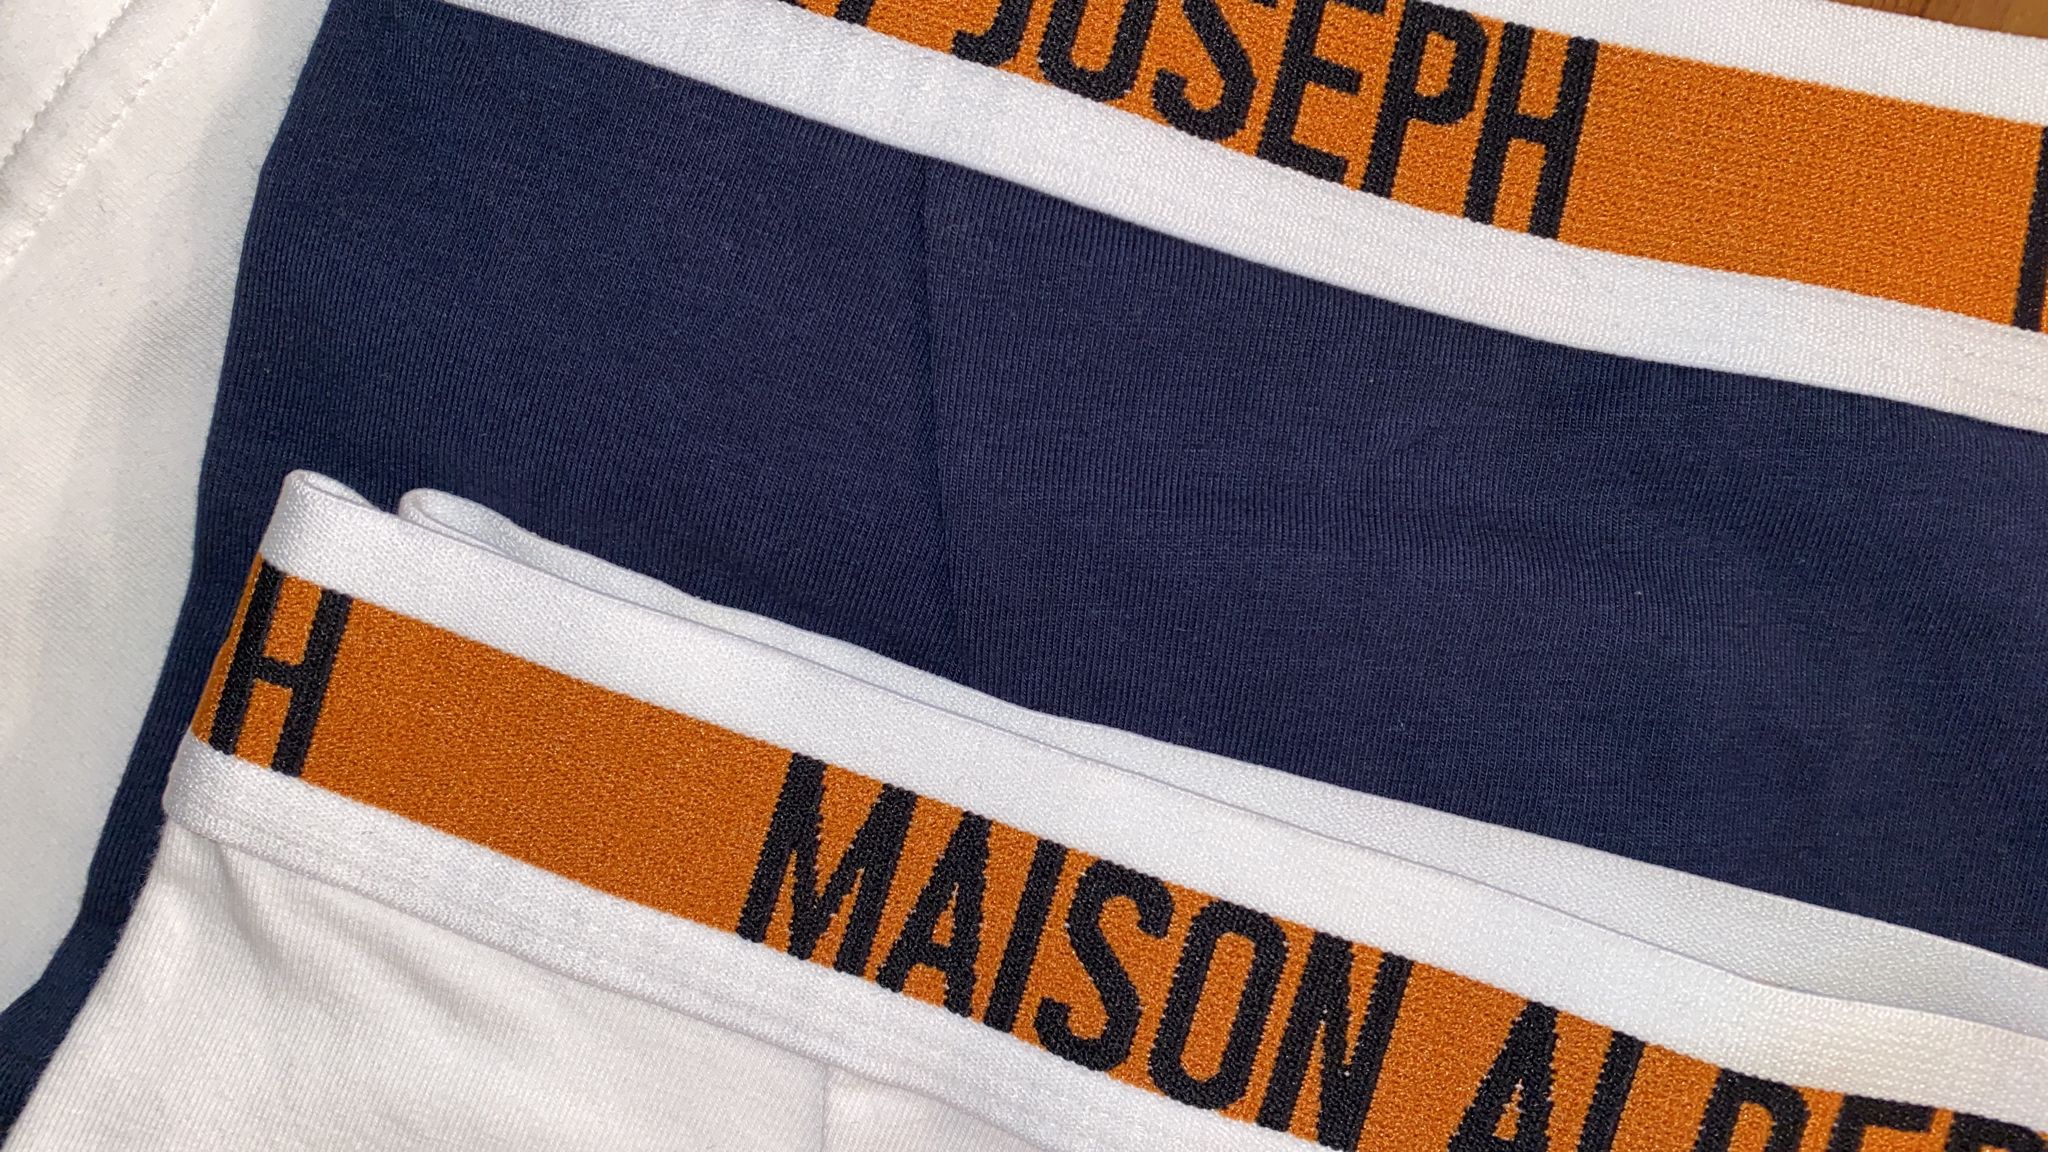 Boxer maison albert joseph, sous-vêtements pour hommes. En blanc et bleu marine avec une ceinture orange et blanche.